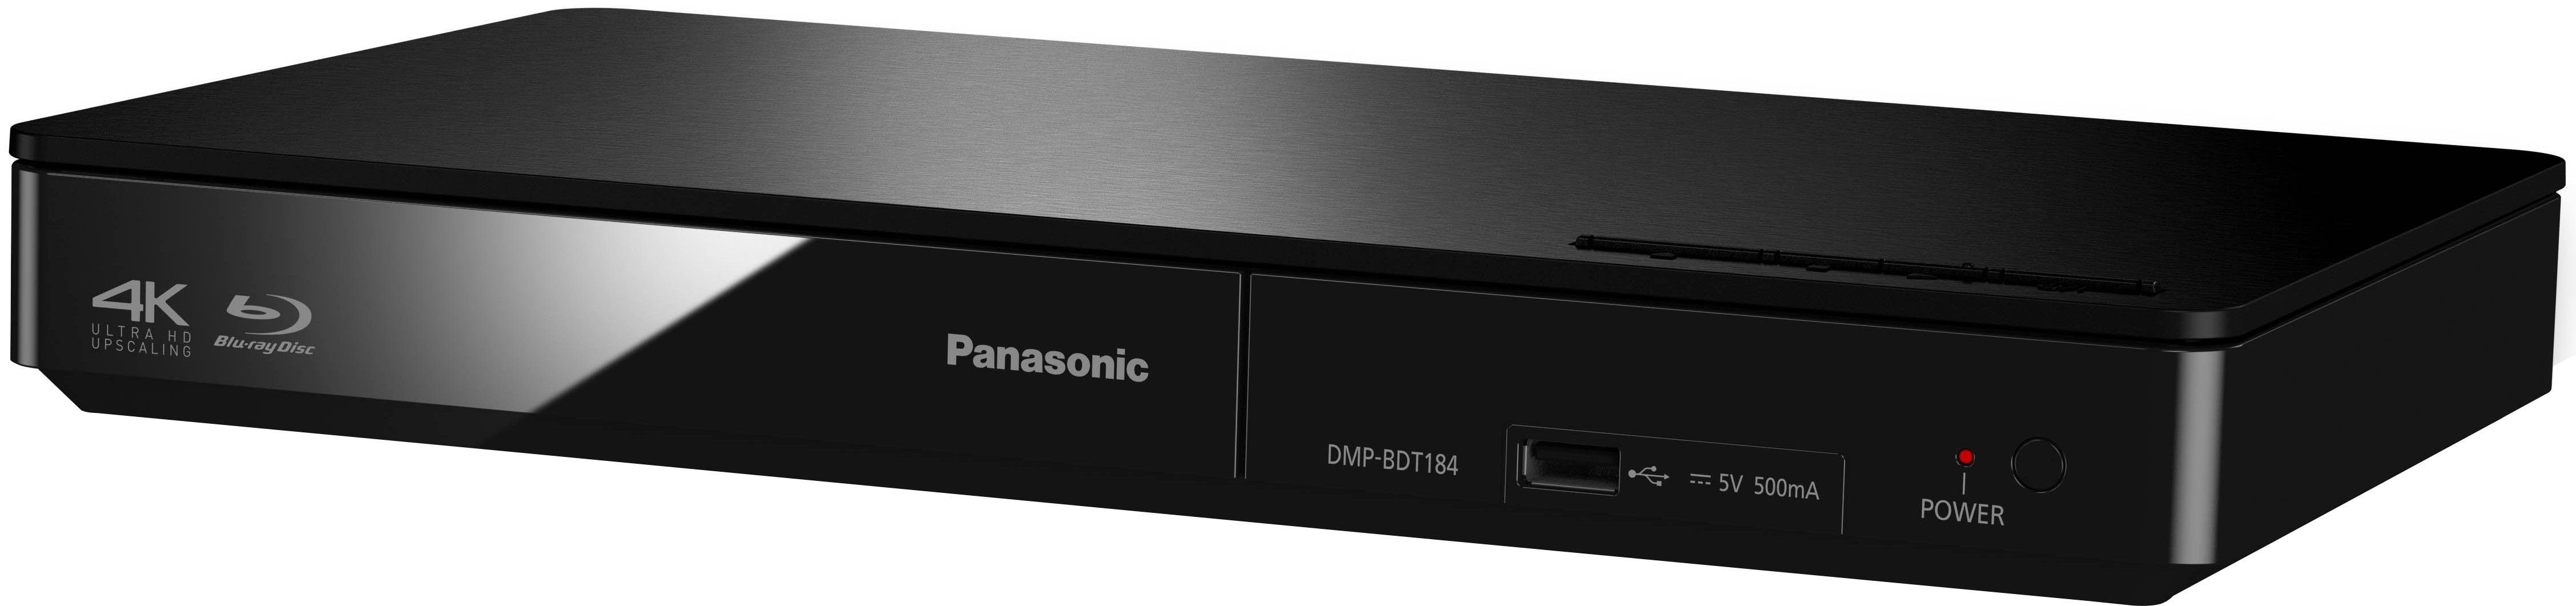 Panasonic DMP-BDT184 / DMP-BDT185 Blu-ray-Player Upscaling, (Ethernet), schwarz (LAN Schnellstart-Modus) 4K